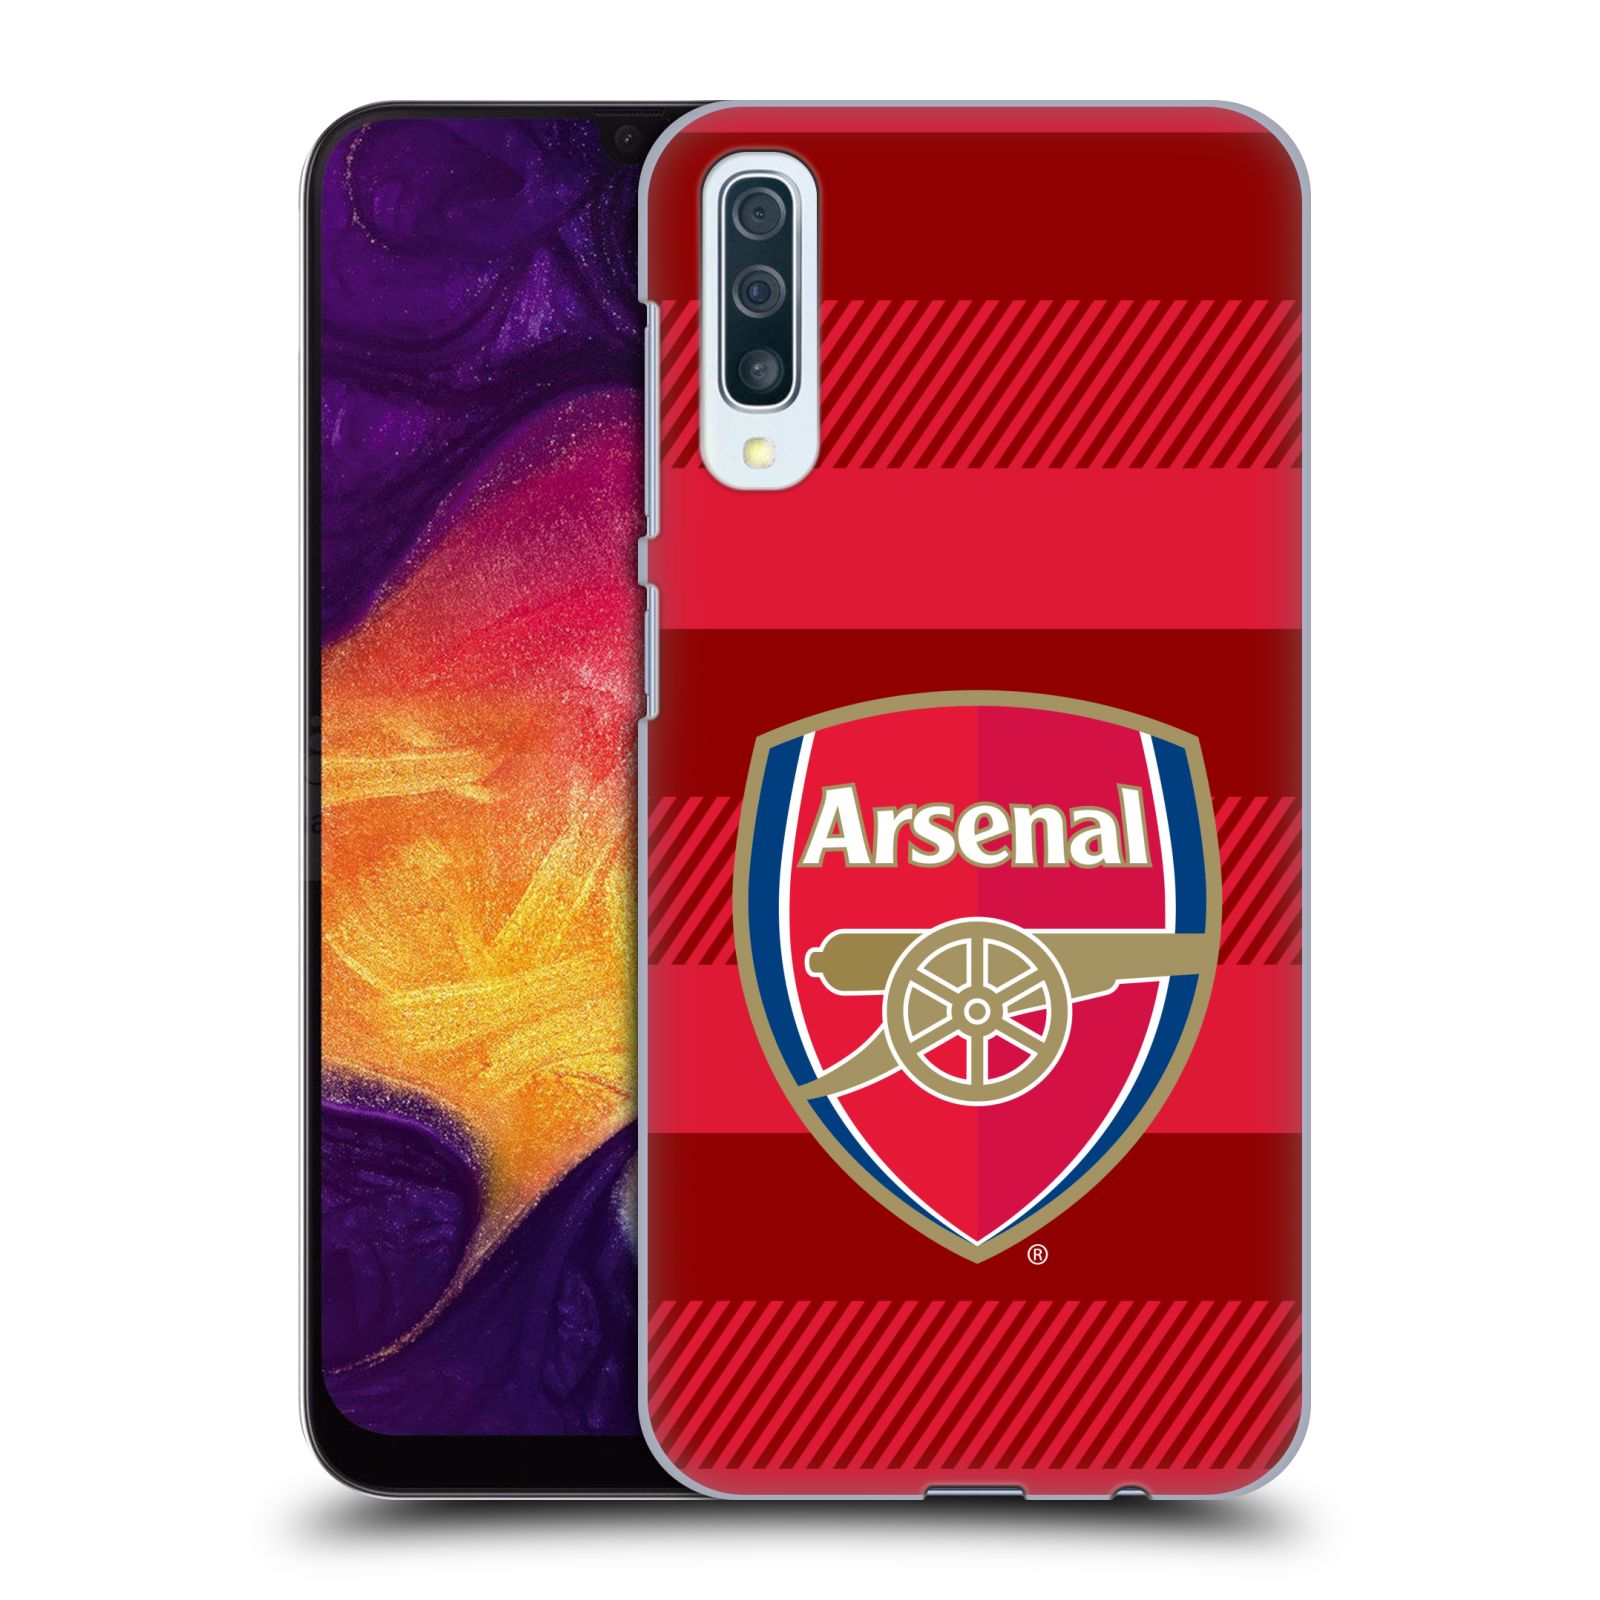 Plastové pouzdro na mobil Samsung Galaxy A50 / A30s - Head Case - Arsenal FC - Logo s pruhy (Plastový kryt, pouzdro, obal na mobilní telefon s motivem klubu Arsenal FC - Logo s pruhy pro Samsung Galaxy A50 / A30s z roku 2019)